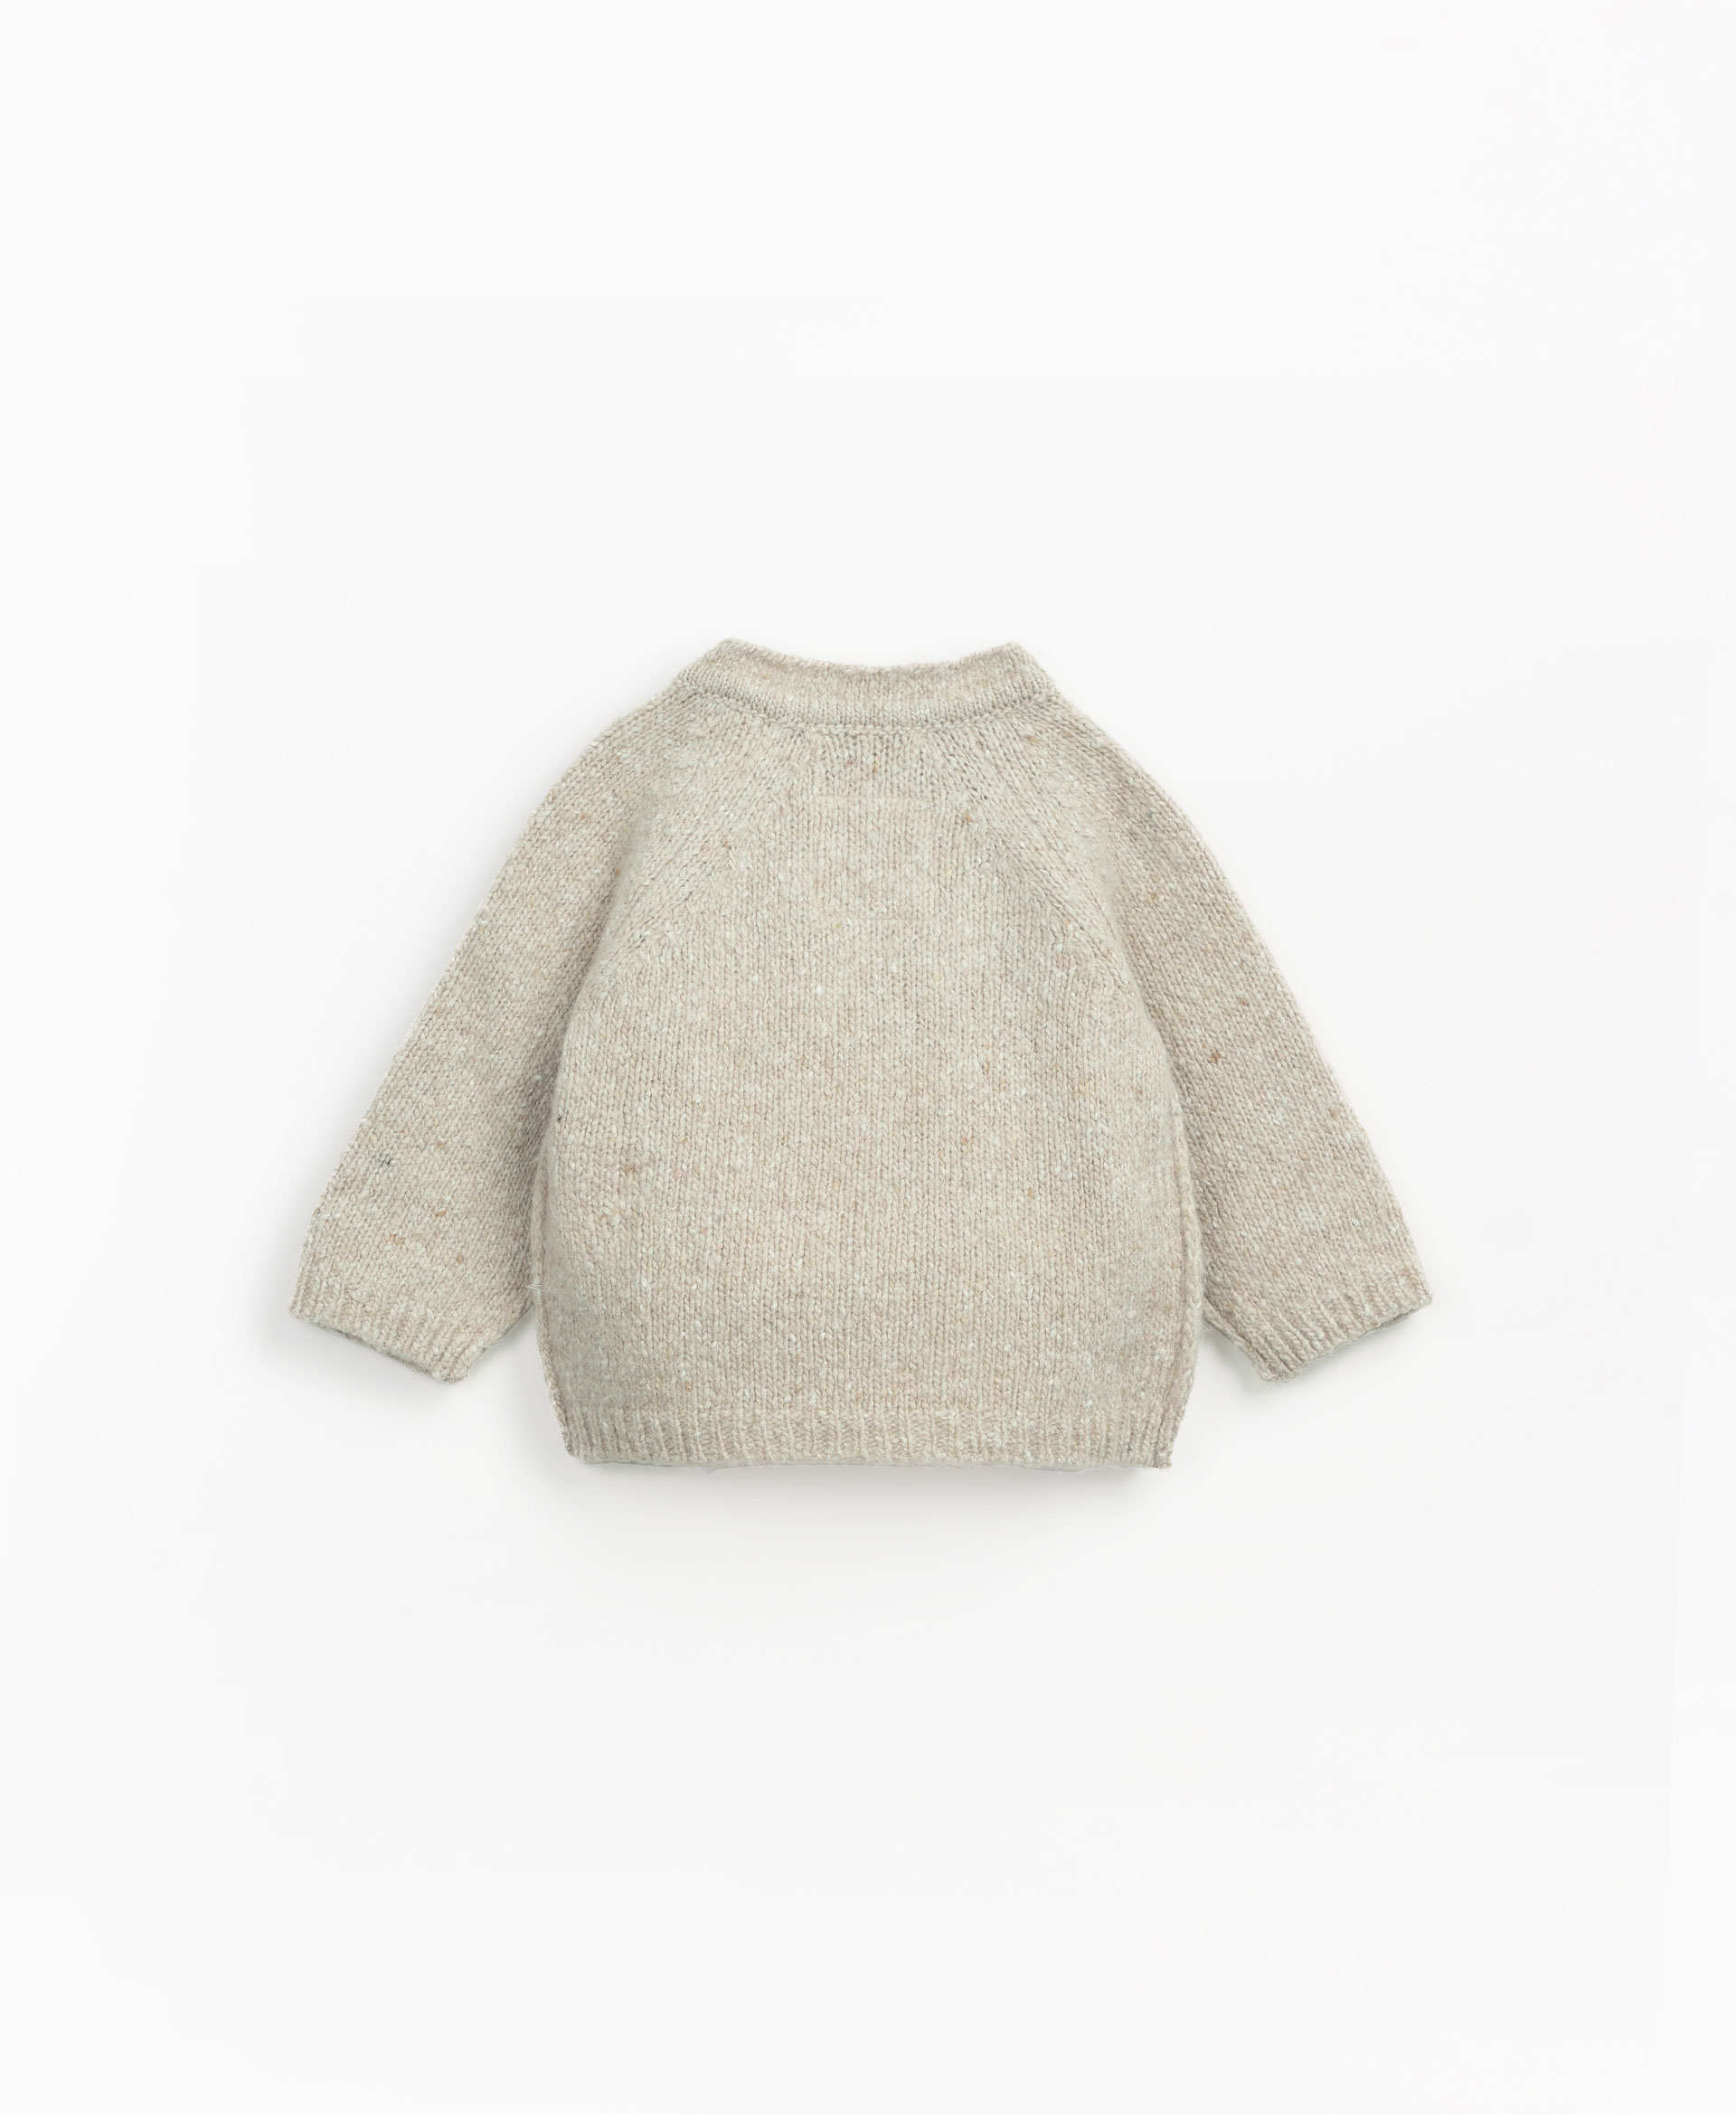 Pull en tricot avec ouverture  l'emmanchure | Mother Lcia